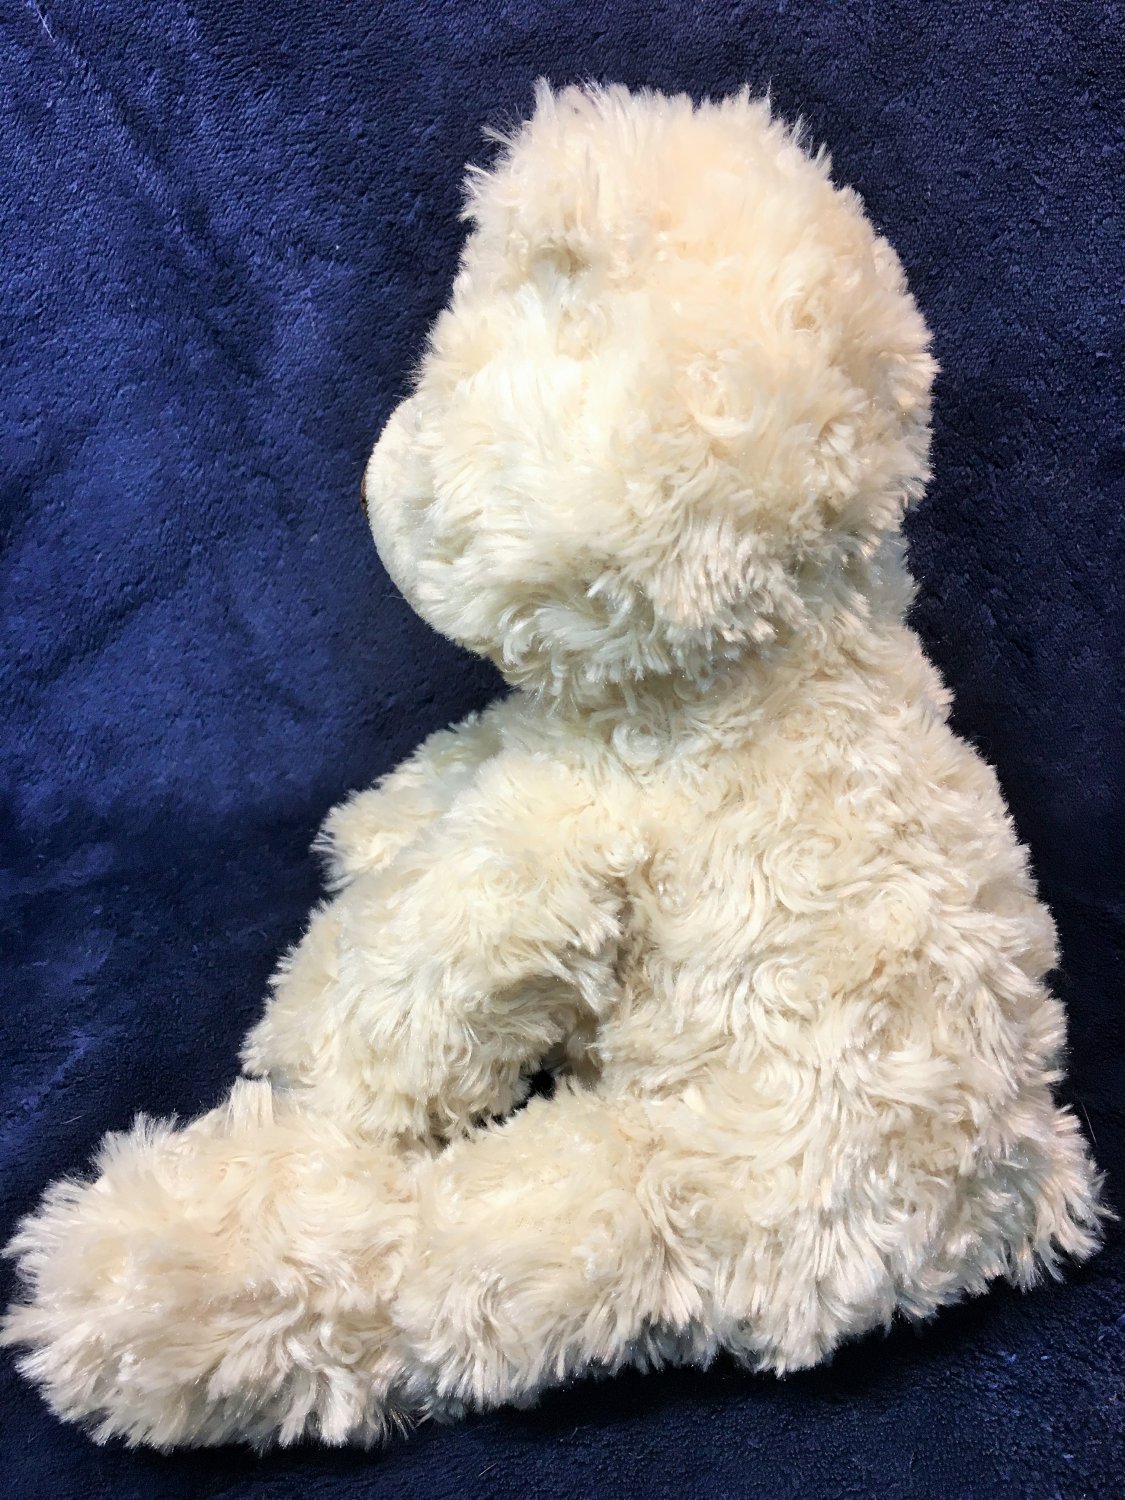 GUND Philbin Teddy Bear Stuffed Animal Plush Beige Soft Toy 12